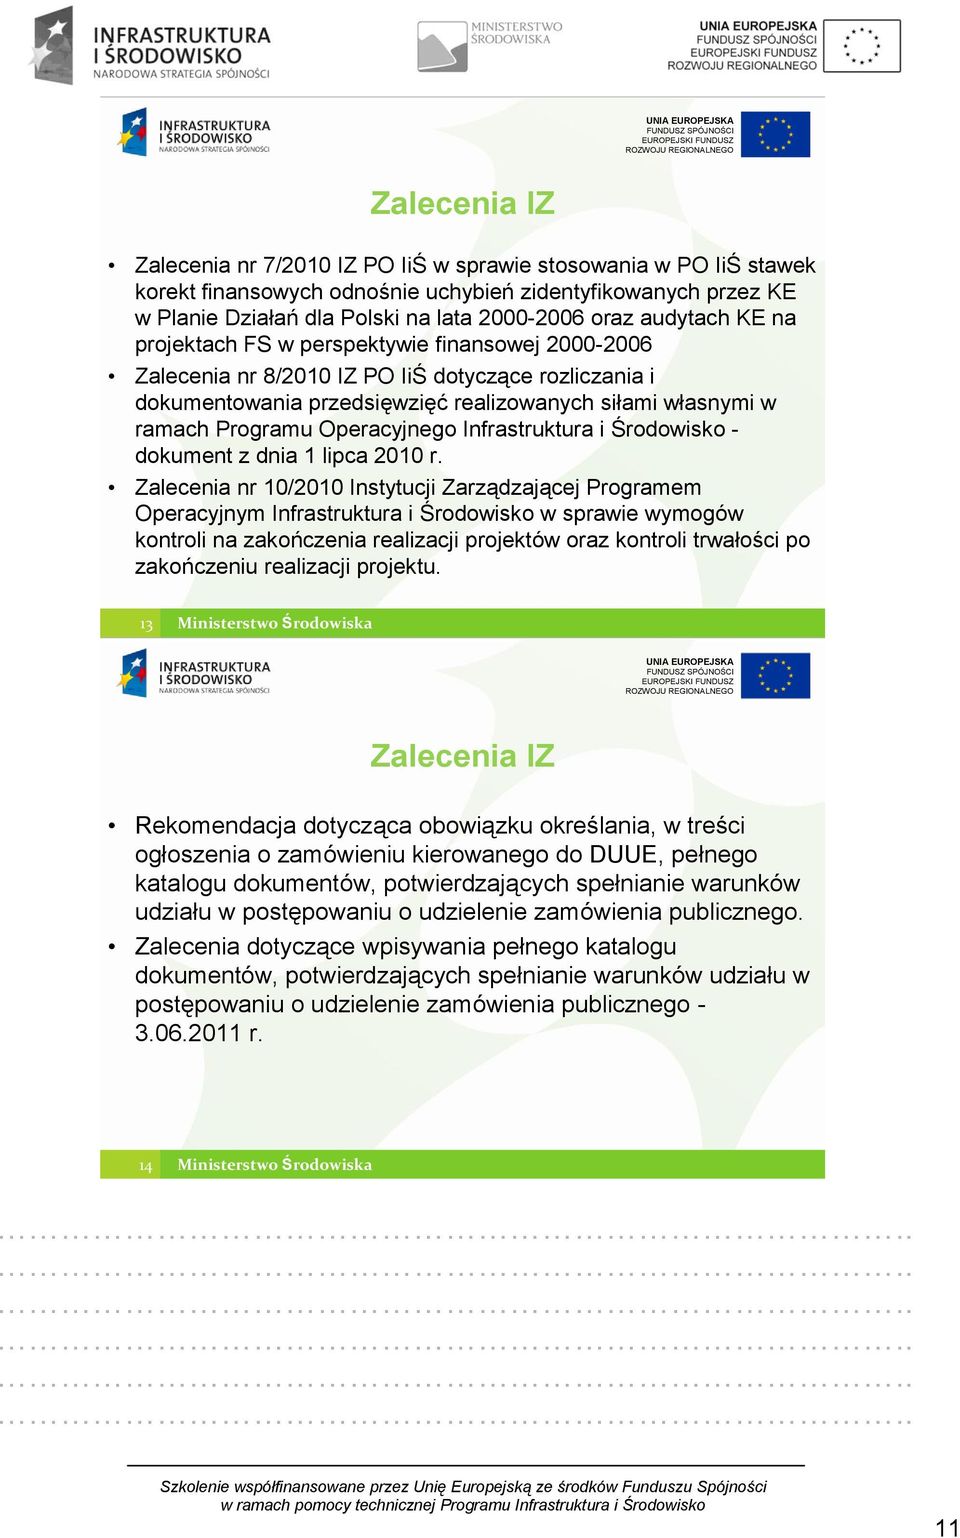 Operacyjnego Infrastruktura i Środowisko - dokument z dnia 1 lipca 2010 r.